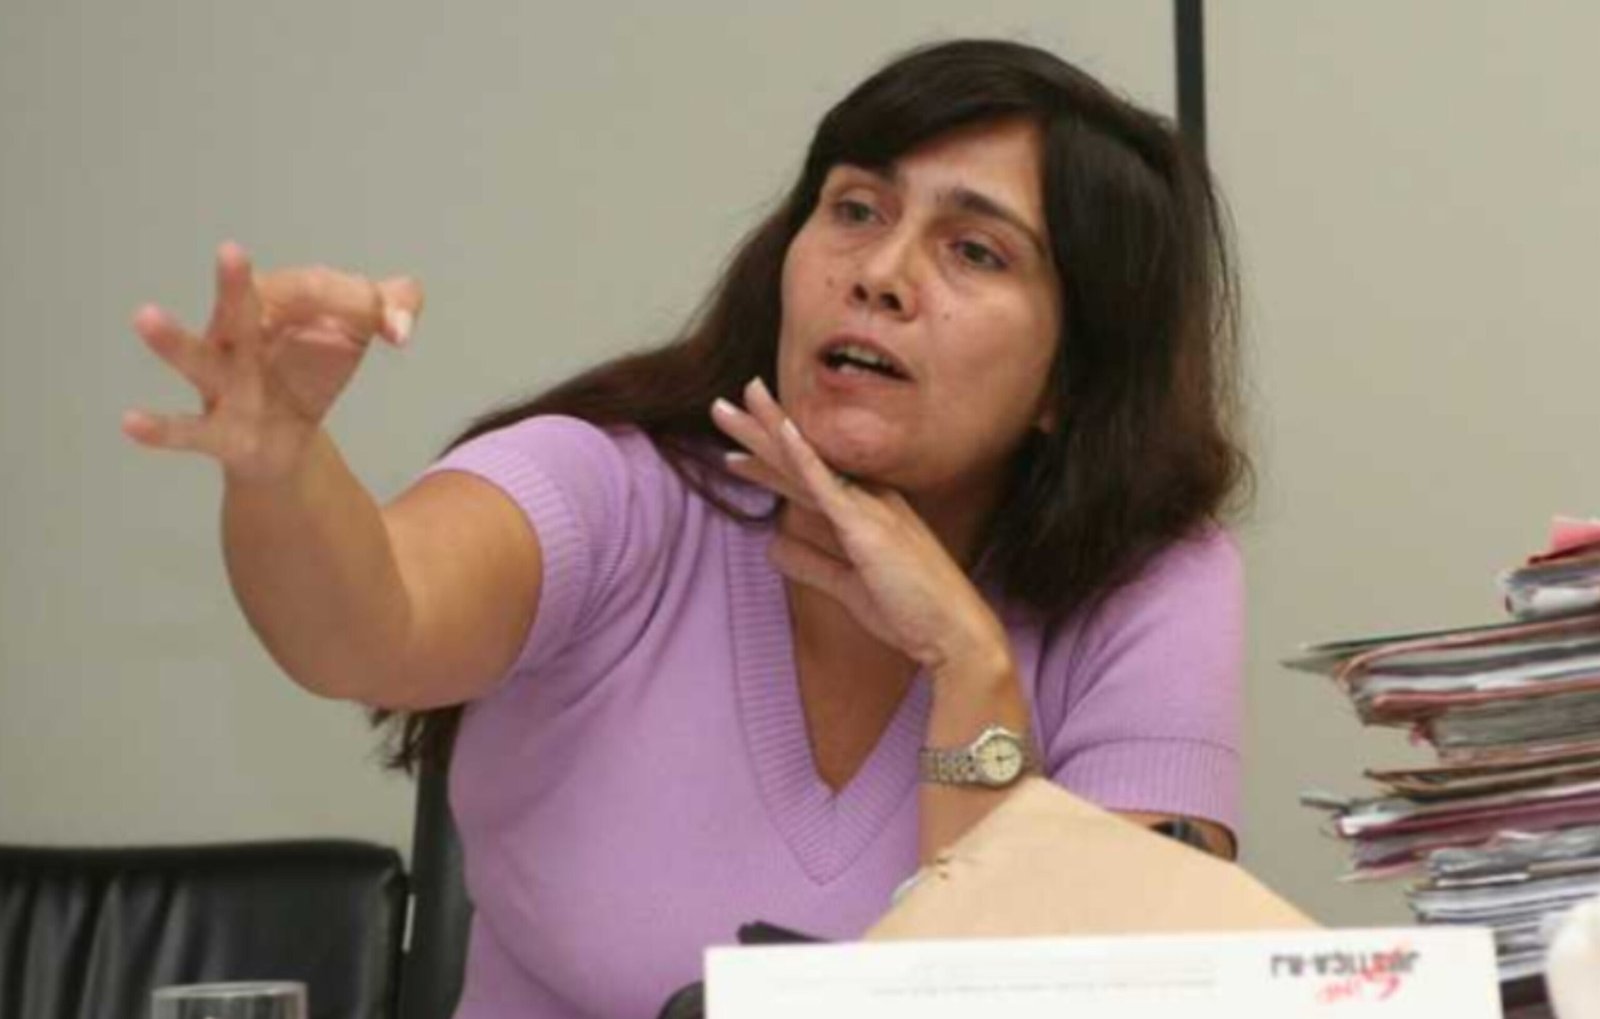 Ex-PM condenado pela morte da juíza Patrícia Acioli é autorizado a estudar na UFF